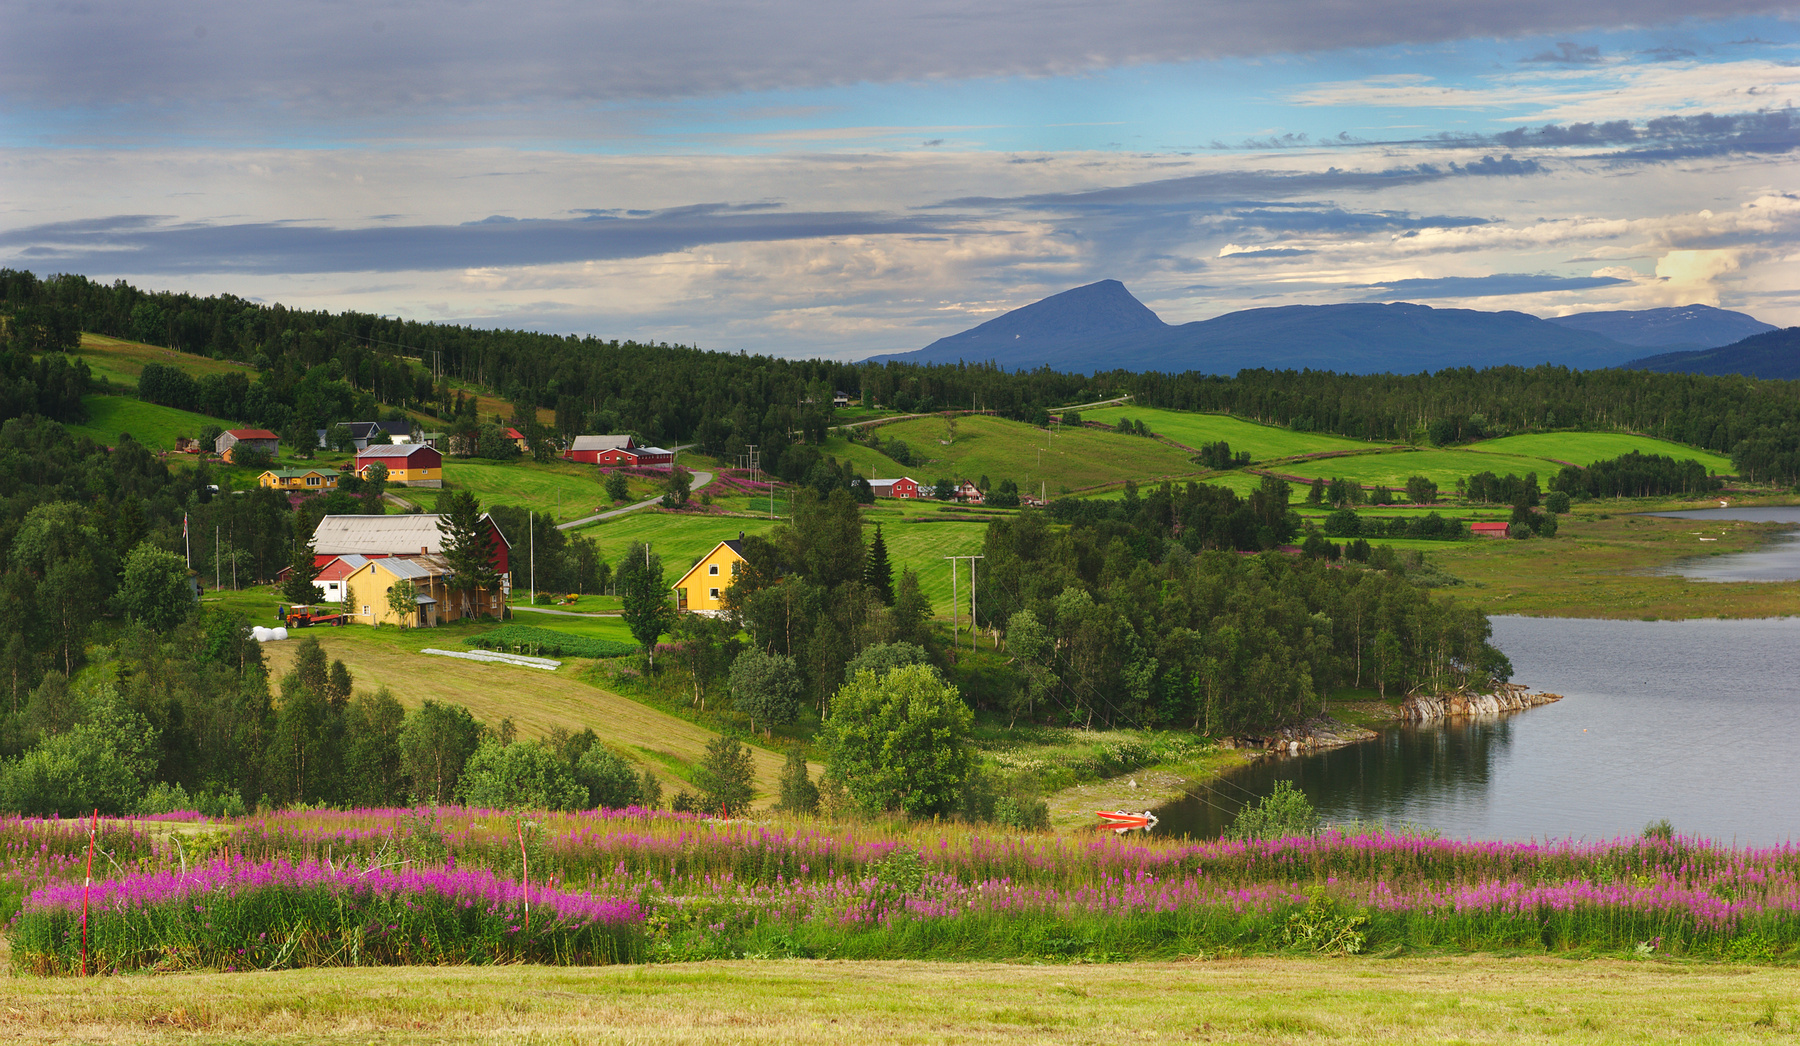 Недалеко от полярного круга норвегия фьорд берег поселок горы иван-чай лодка поля дороги